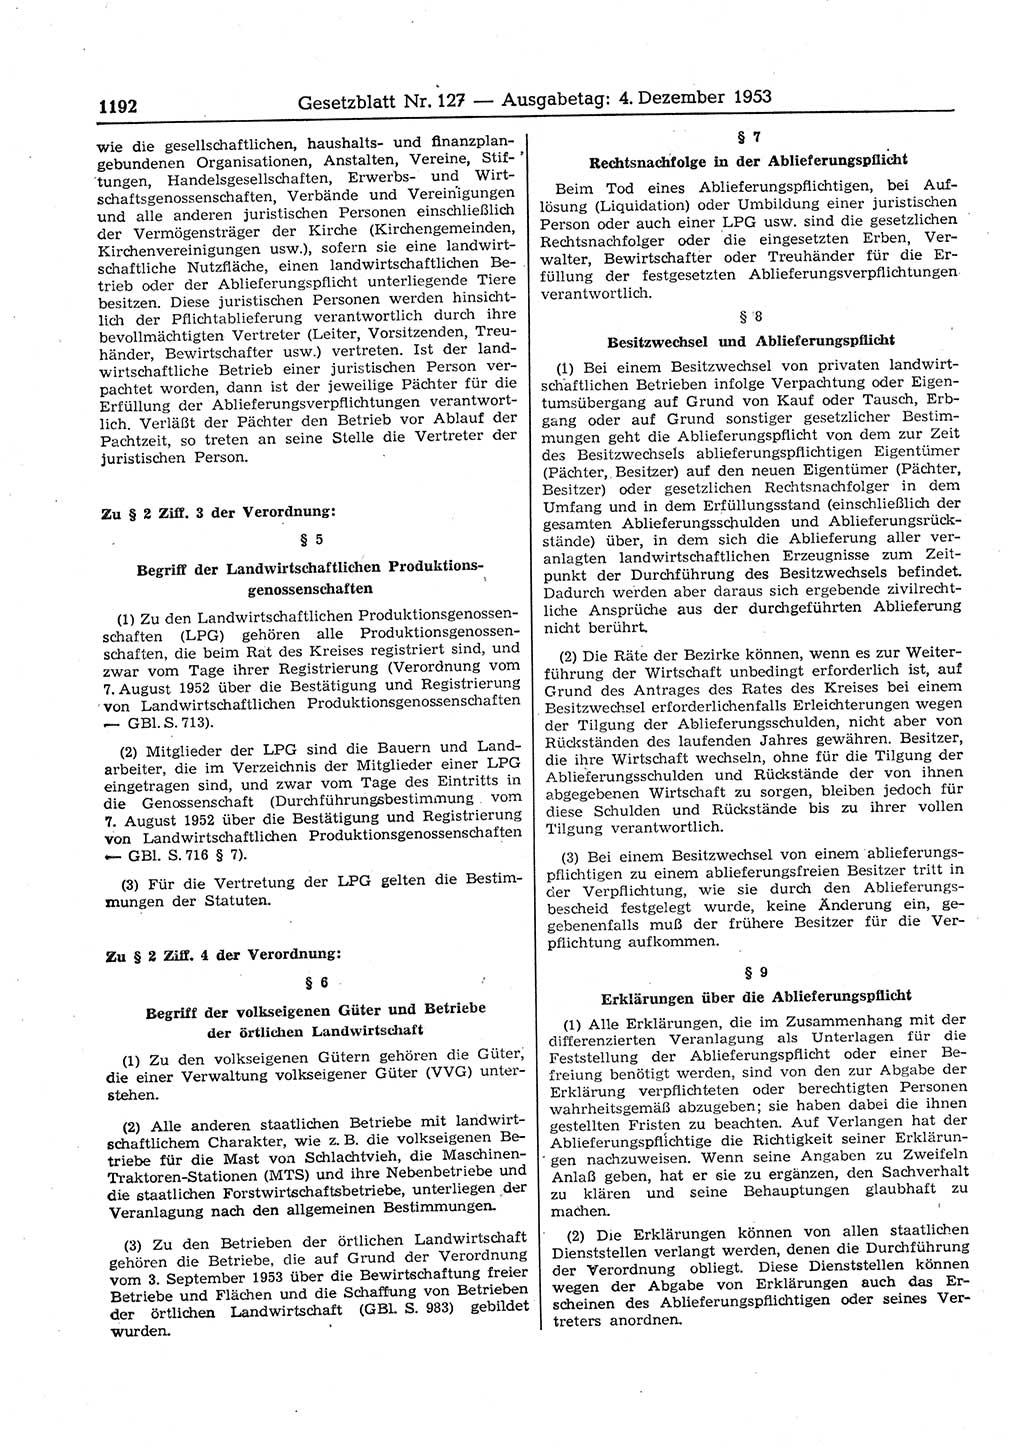 Gesetzblatt (GBl.) der Deutschen Demokratischen Republik (DDR) 1953, Seite 1192 (GBl. DDR 1953, S. 1192)